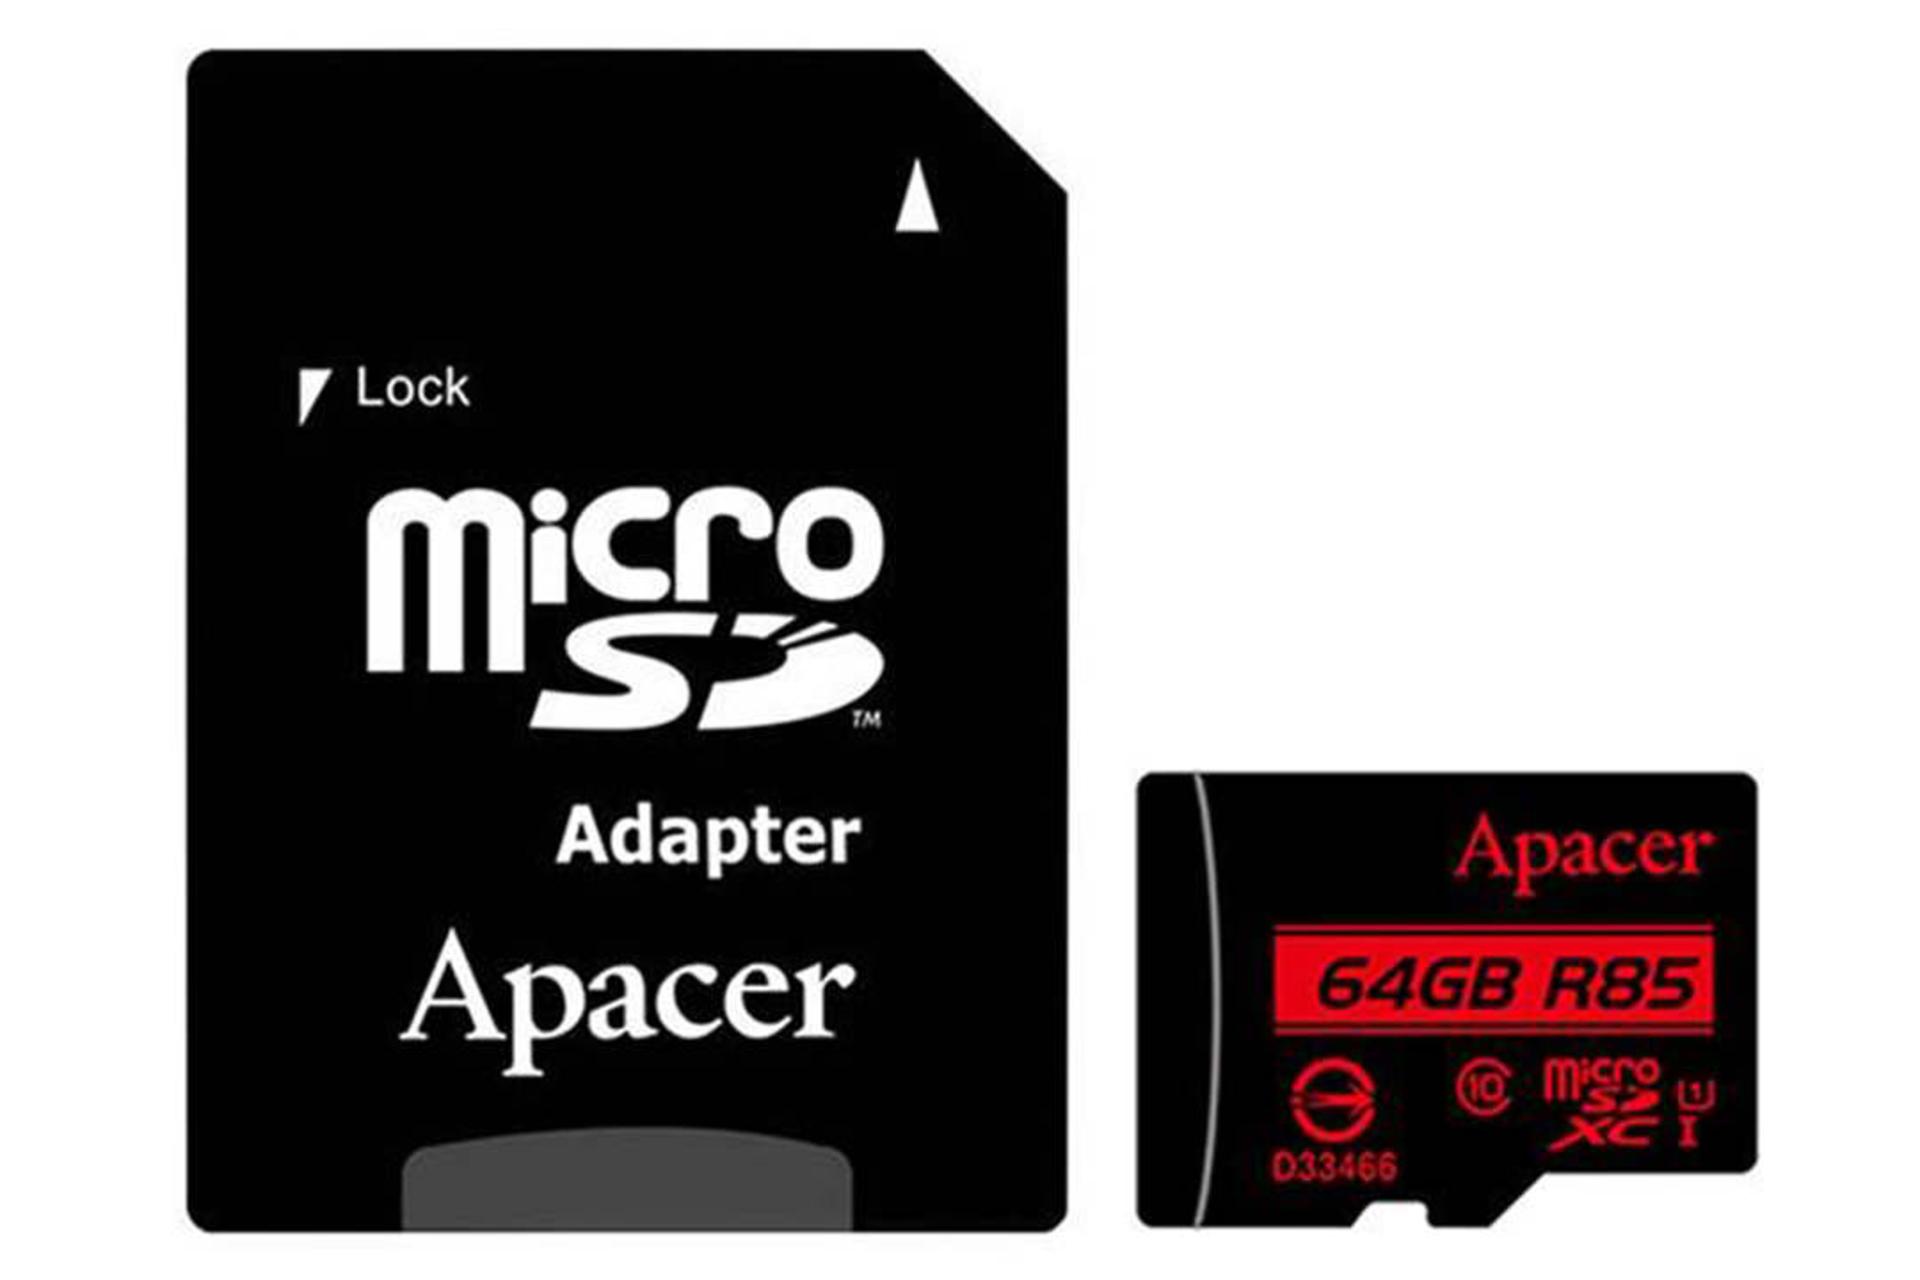 Apacer R85 microSDHC Class 10 UHS-I U1 64GB